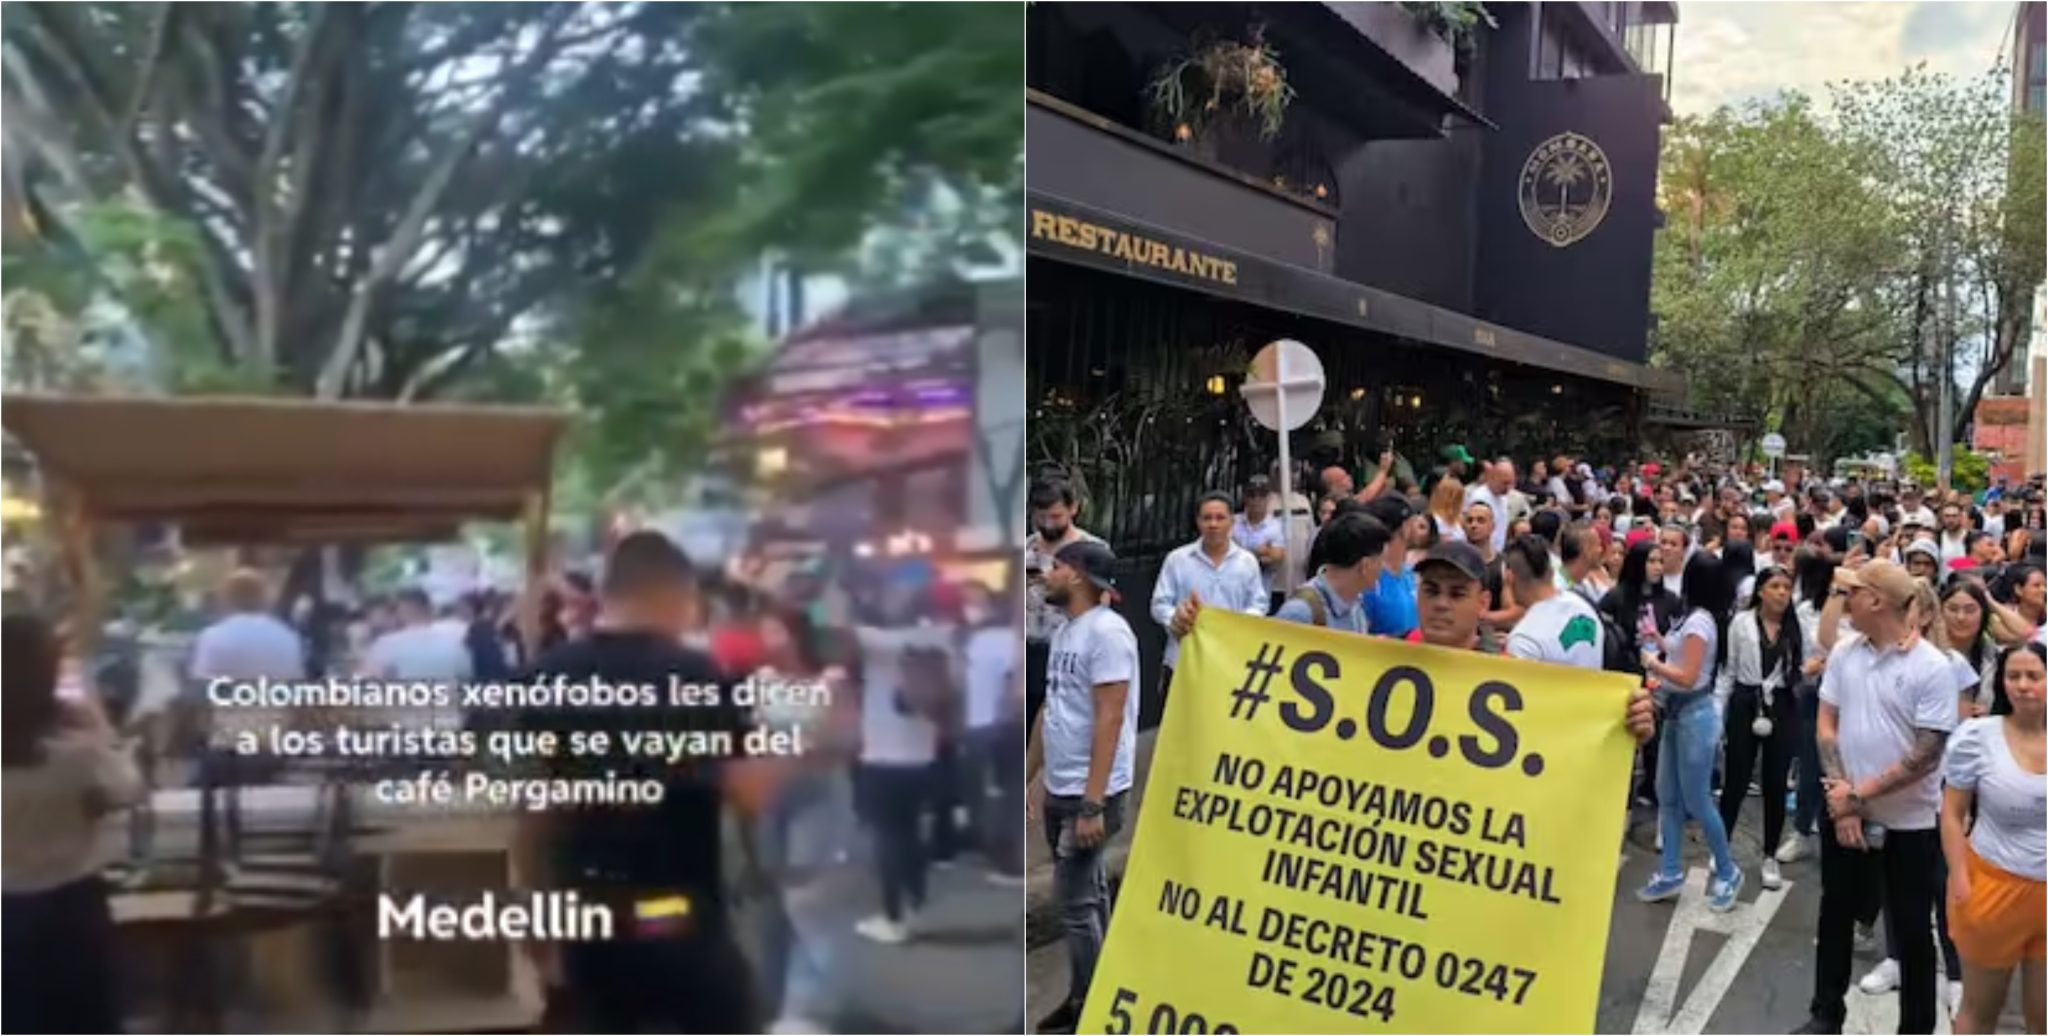 [Video] ¿Xenofobia? Esta es la razón de las protestas de los comerciantes contra un local en El Lleras